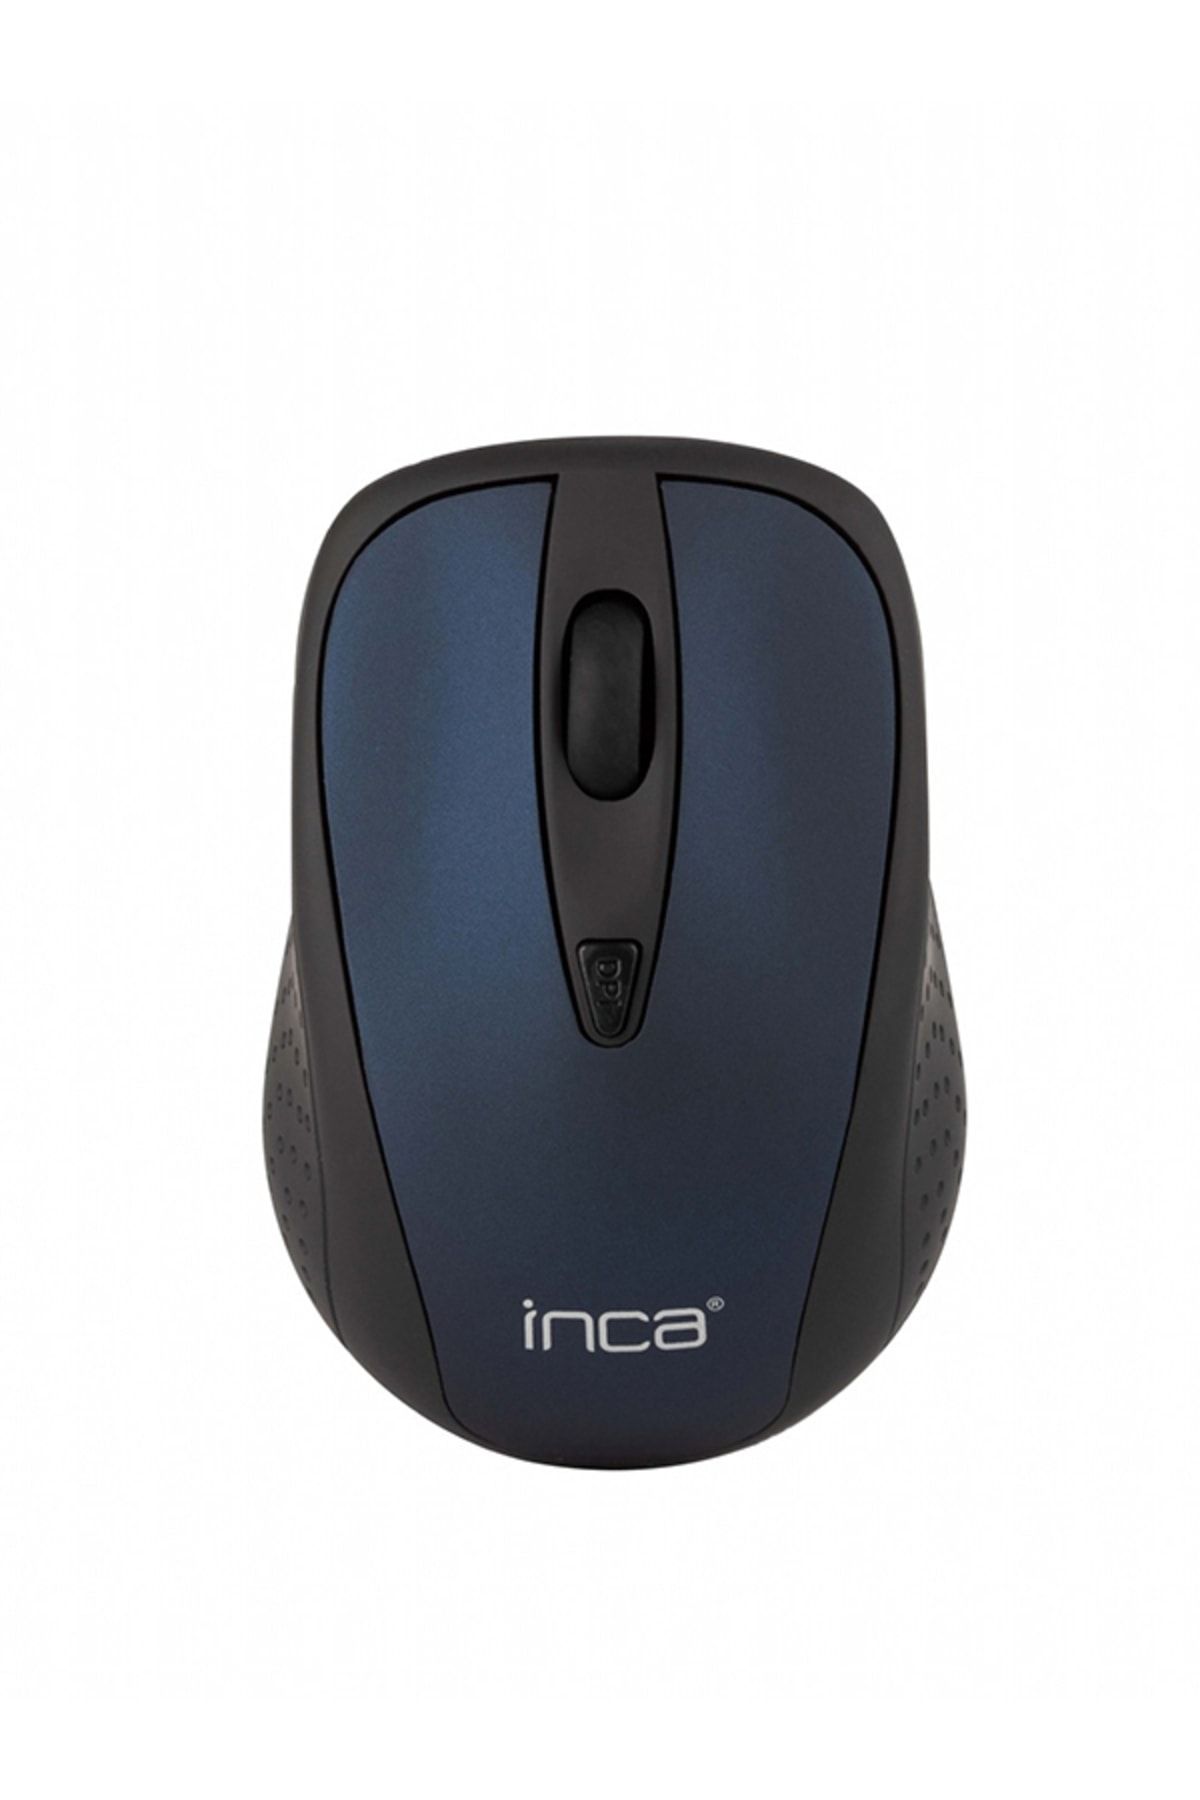 Inca Iwm-213tl 2.4ghz Wıreless Nano Receıver Mouse Dark Blue